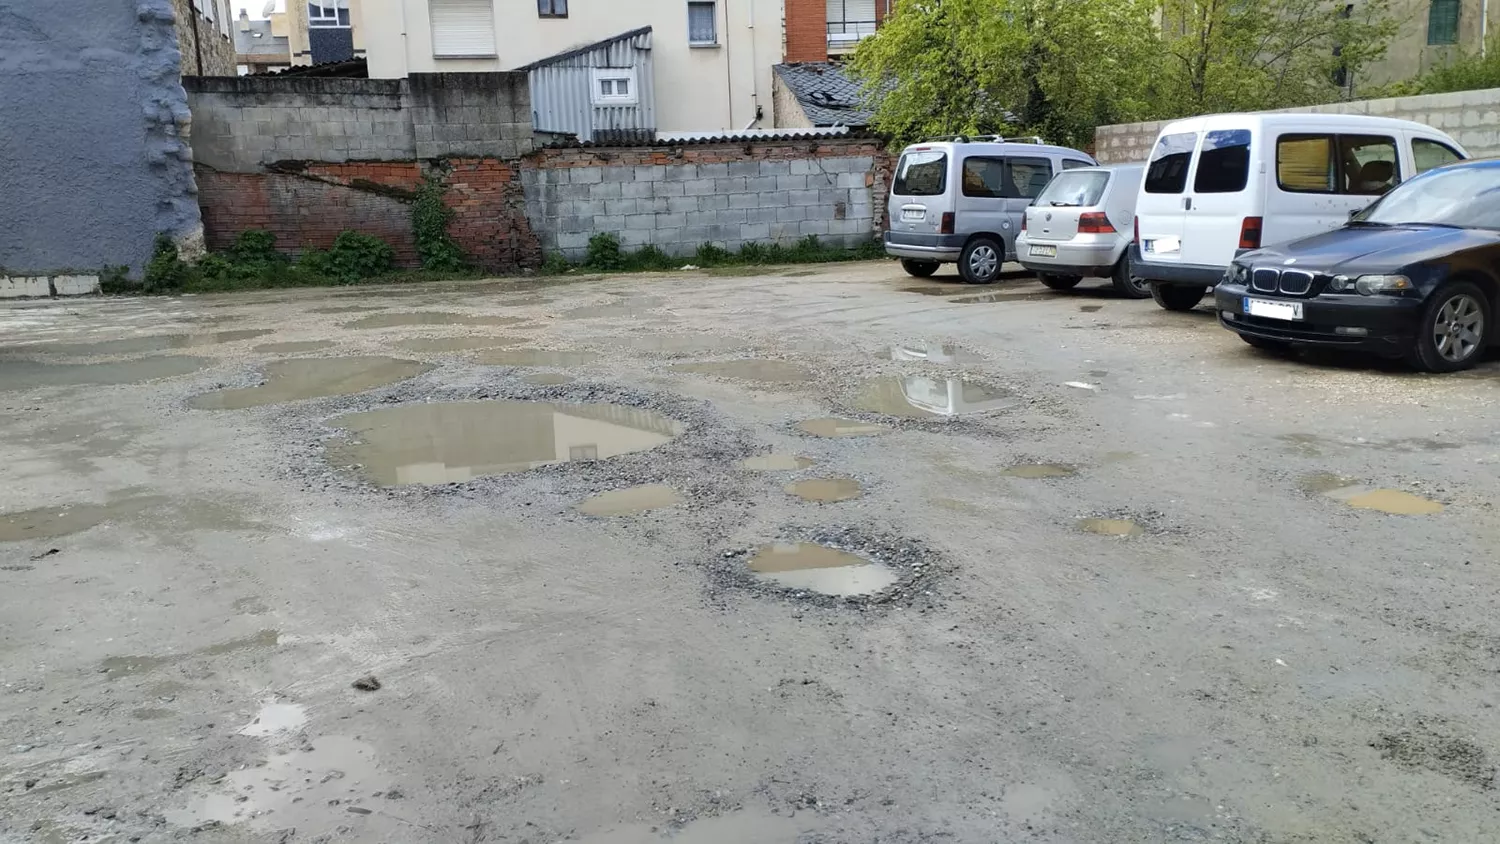 X Bembibre denuncia un “deplorable” mantenimiento del aparcamiento de uso público de la calle Cervantes